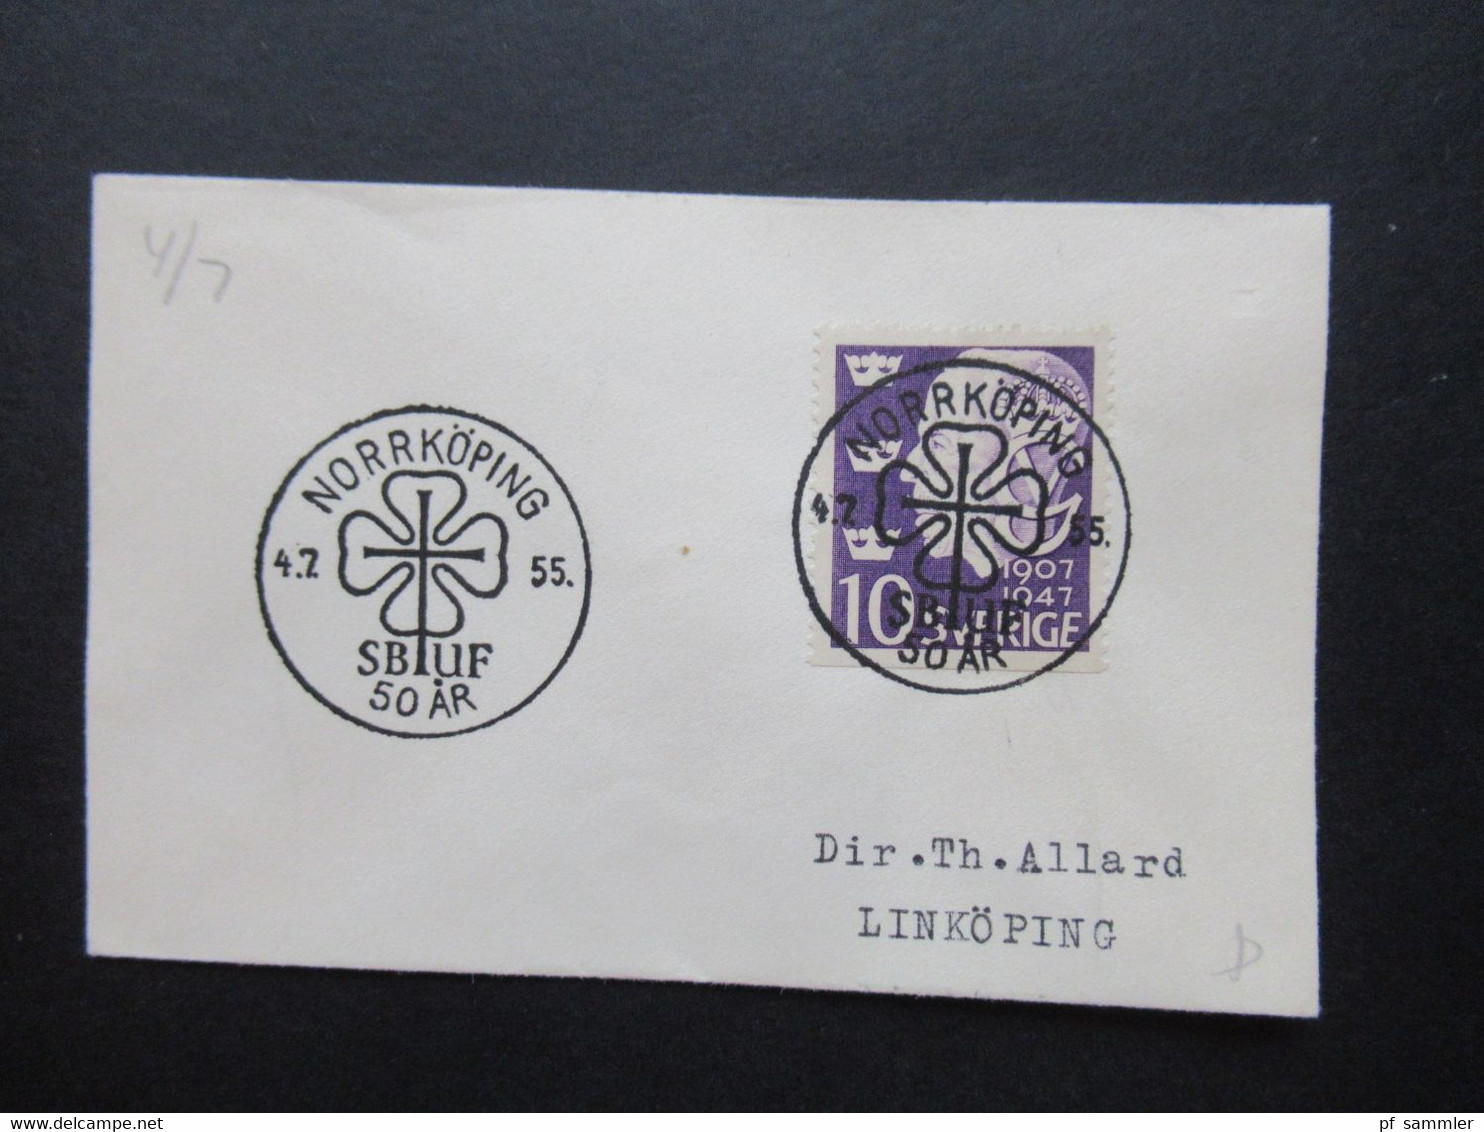 Schweden 1942 - 1955 kleine Belege mit Sonderstempel insgesamt 14 kleine Briefchen! Interessanter Posten!